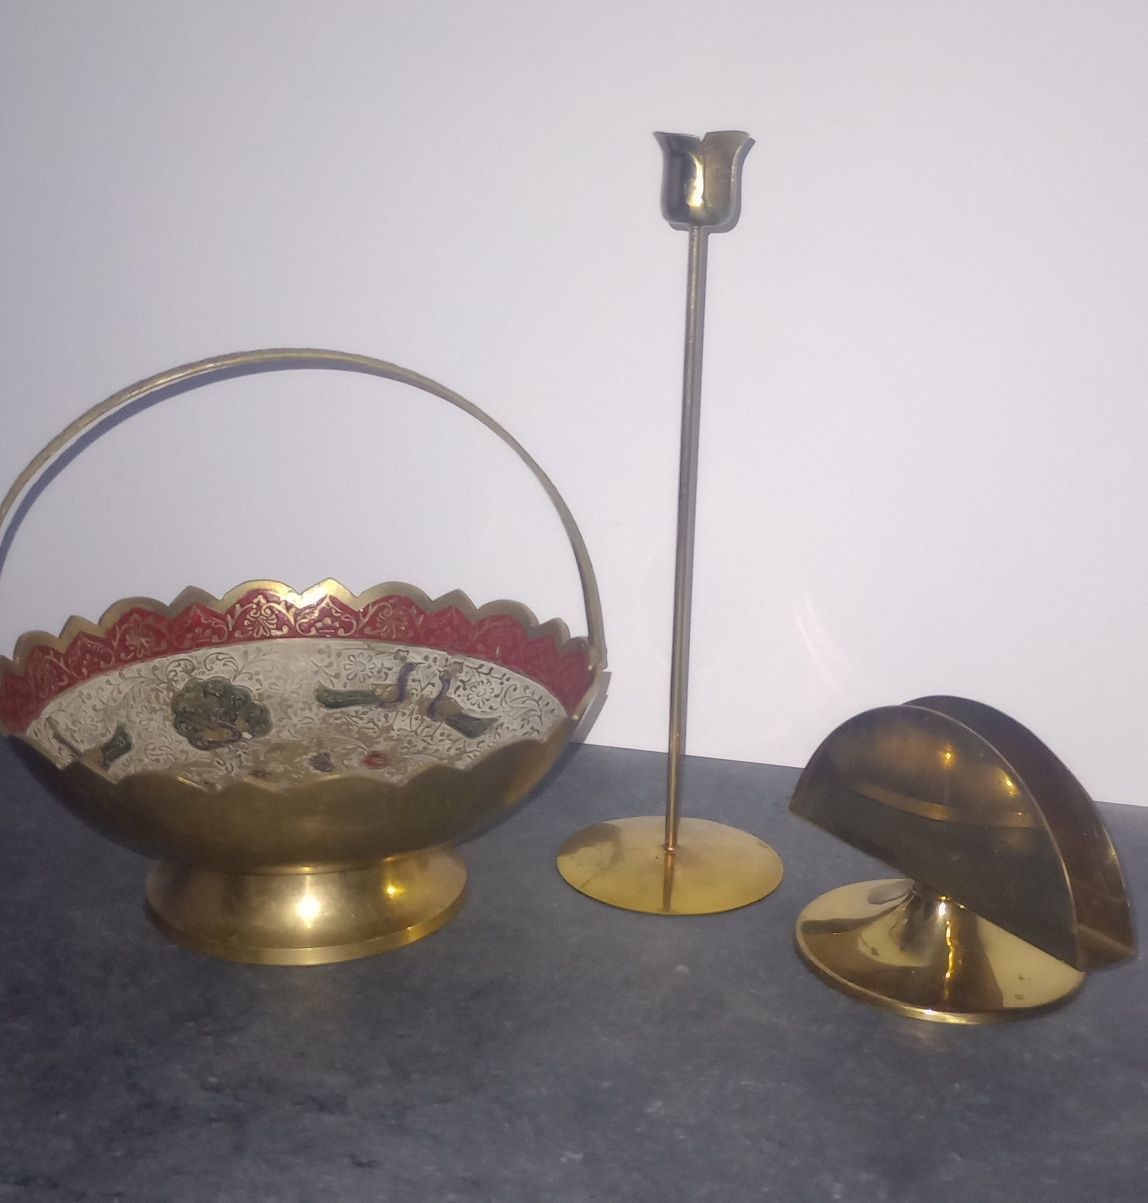 Koszyk, świecznik i serwetnik, kolor starego złota